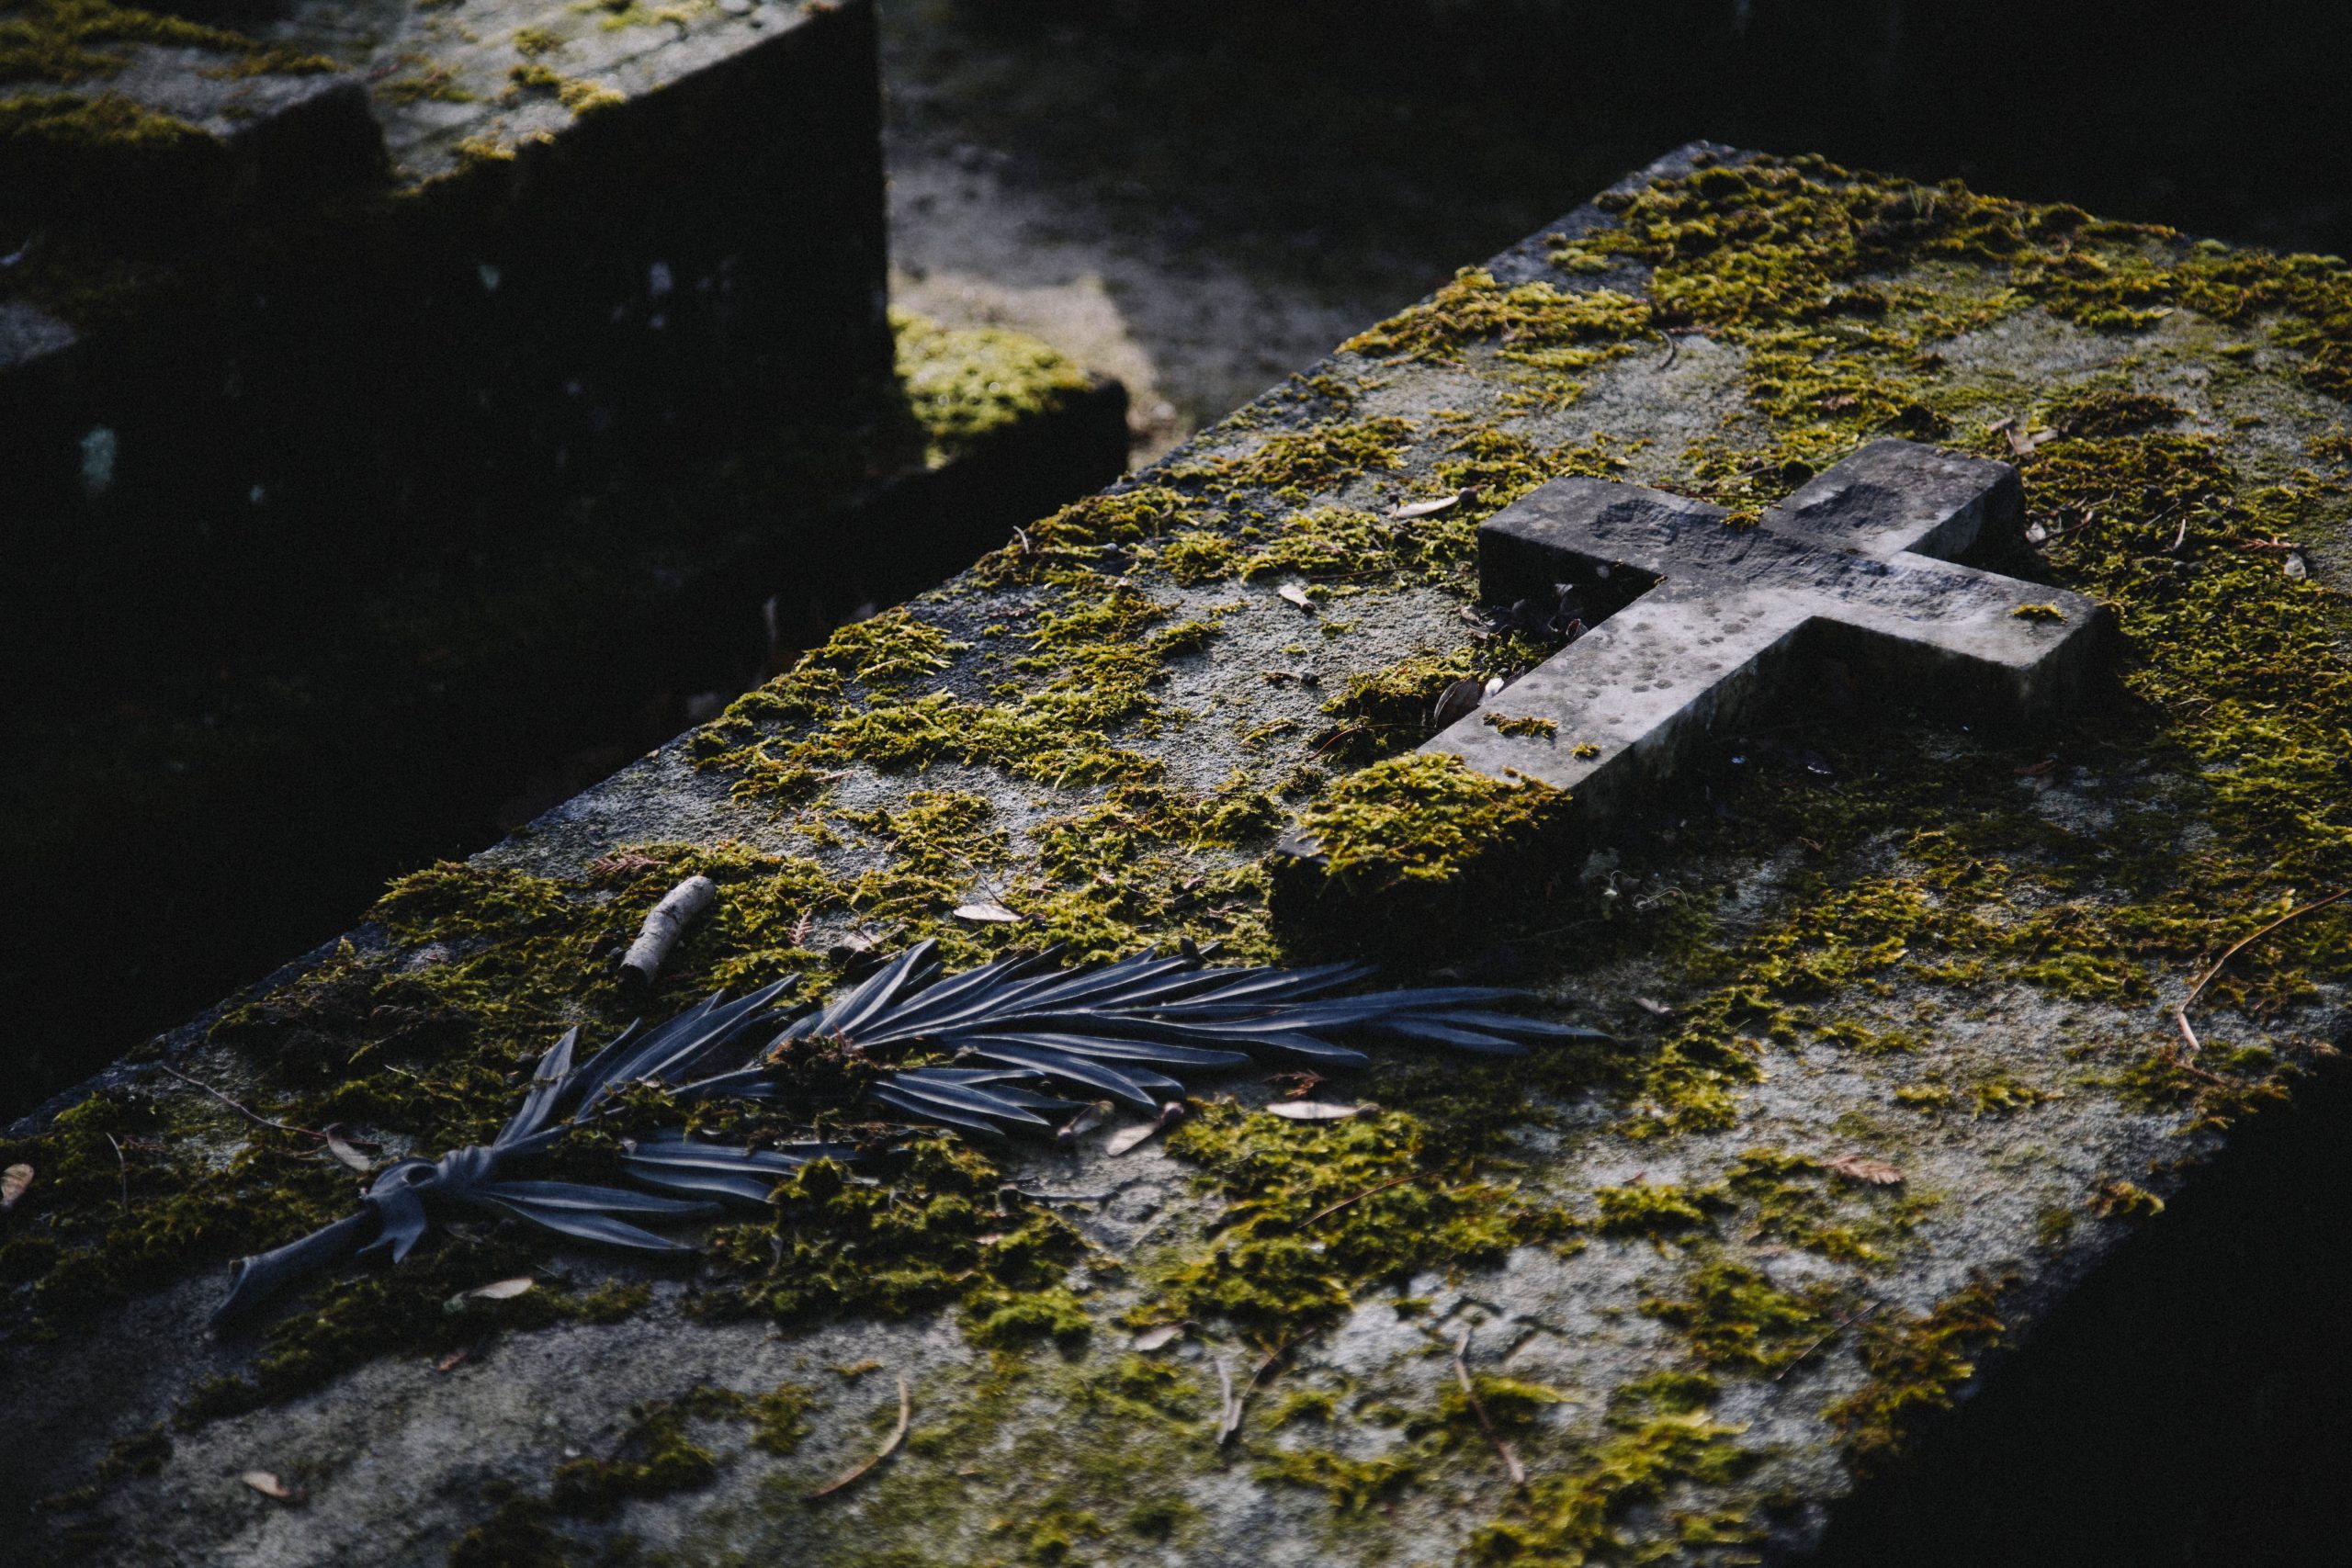 Scopre tradimento moglie morta e imbratta cimitero